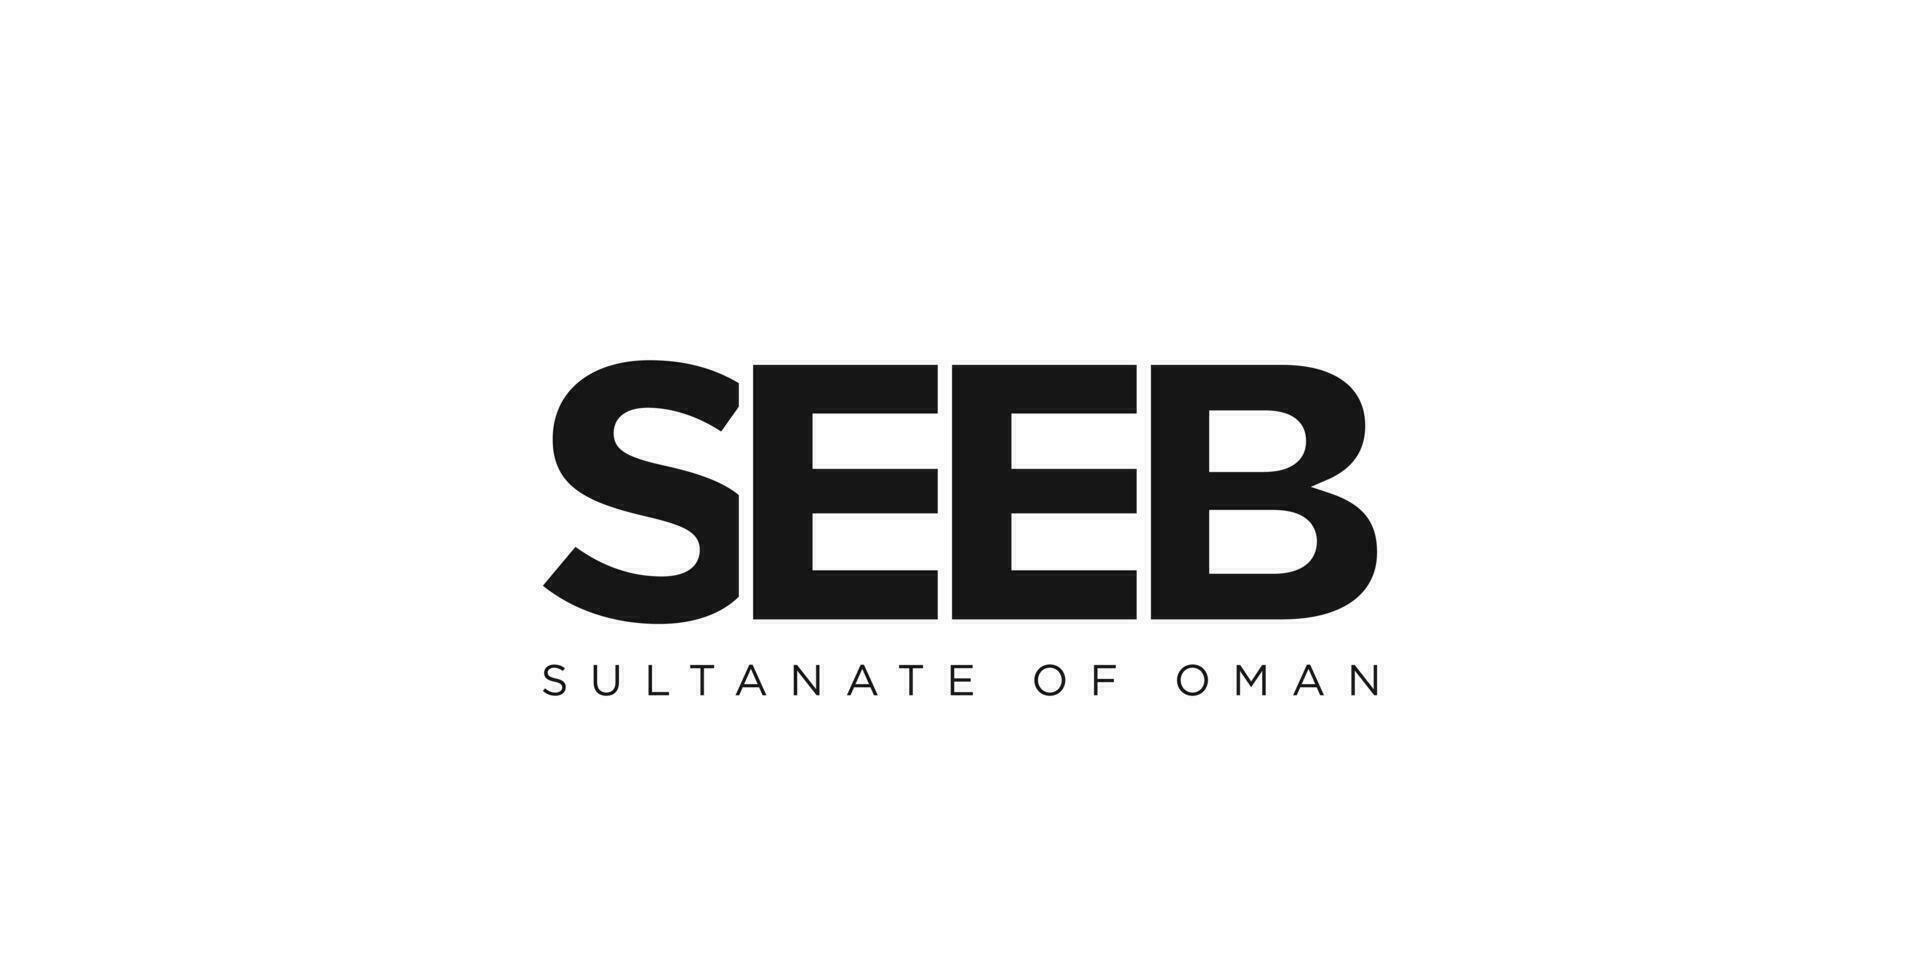 voirb dans le Oman emblème. le conception Caractéristiques une géométrique style, vecteur illustration avec audacieux typographie dans une moderne Police de caractère. le graphique slogan caractères.